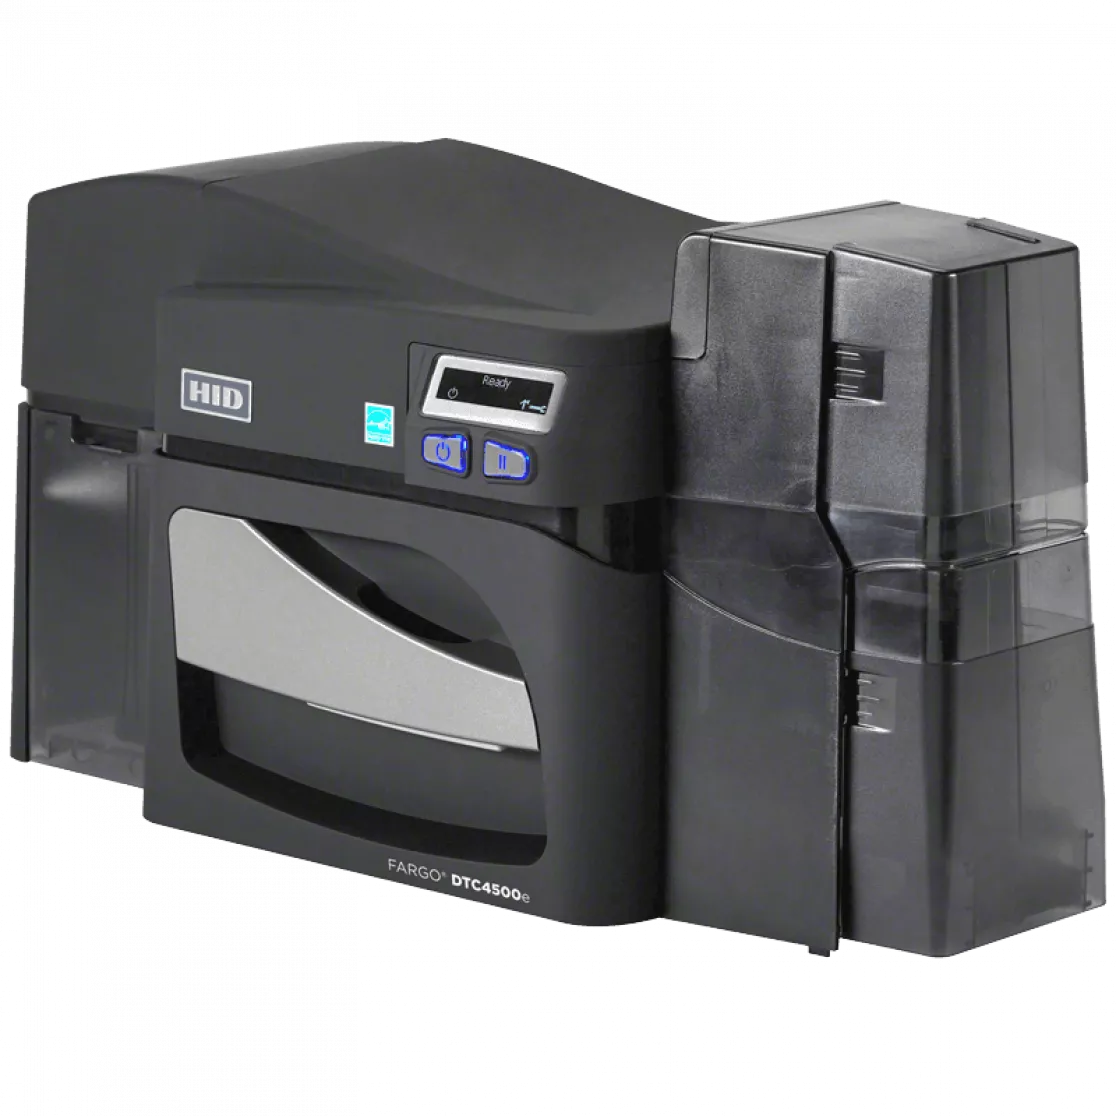 HID Fargo dtc 4500e Card printer